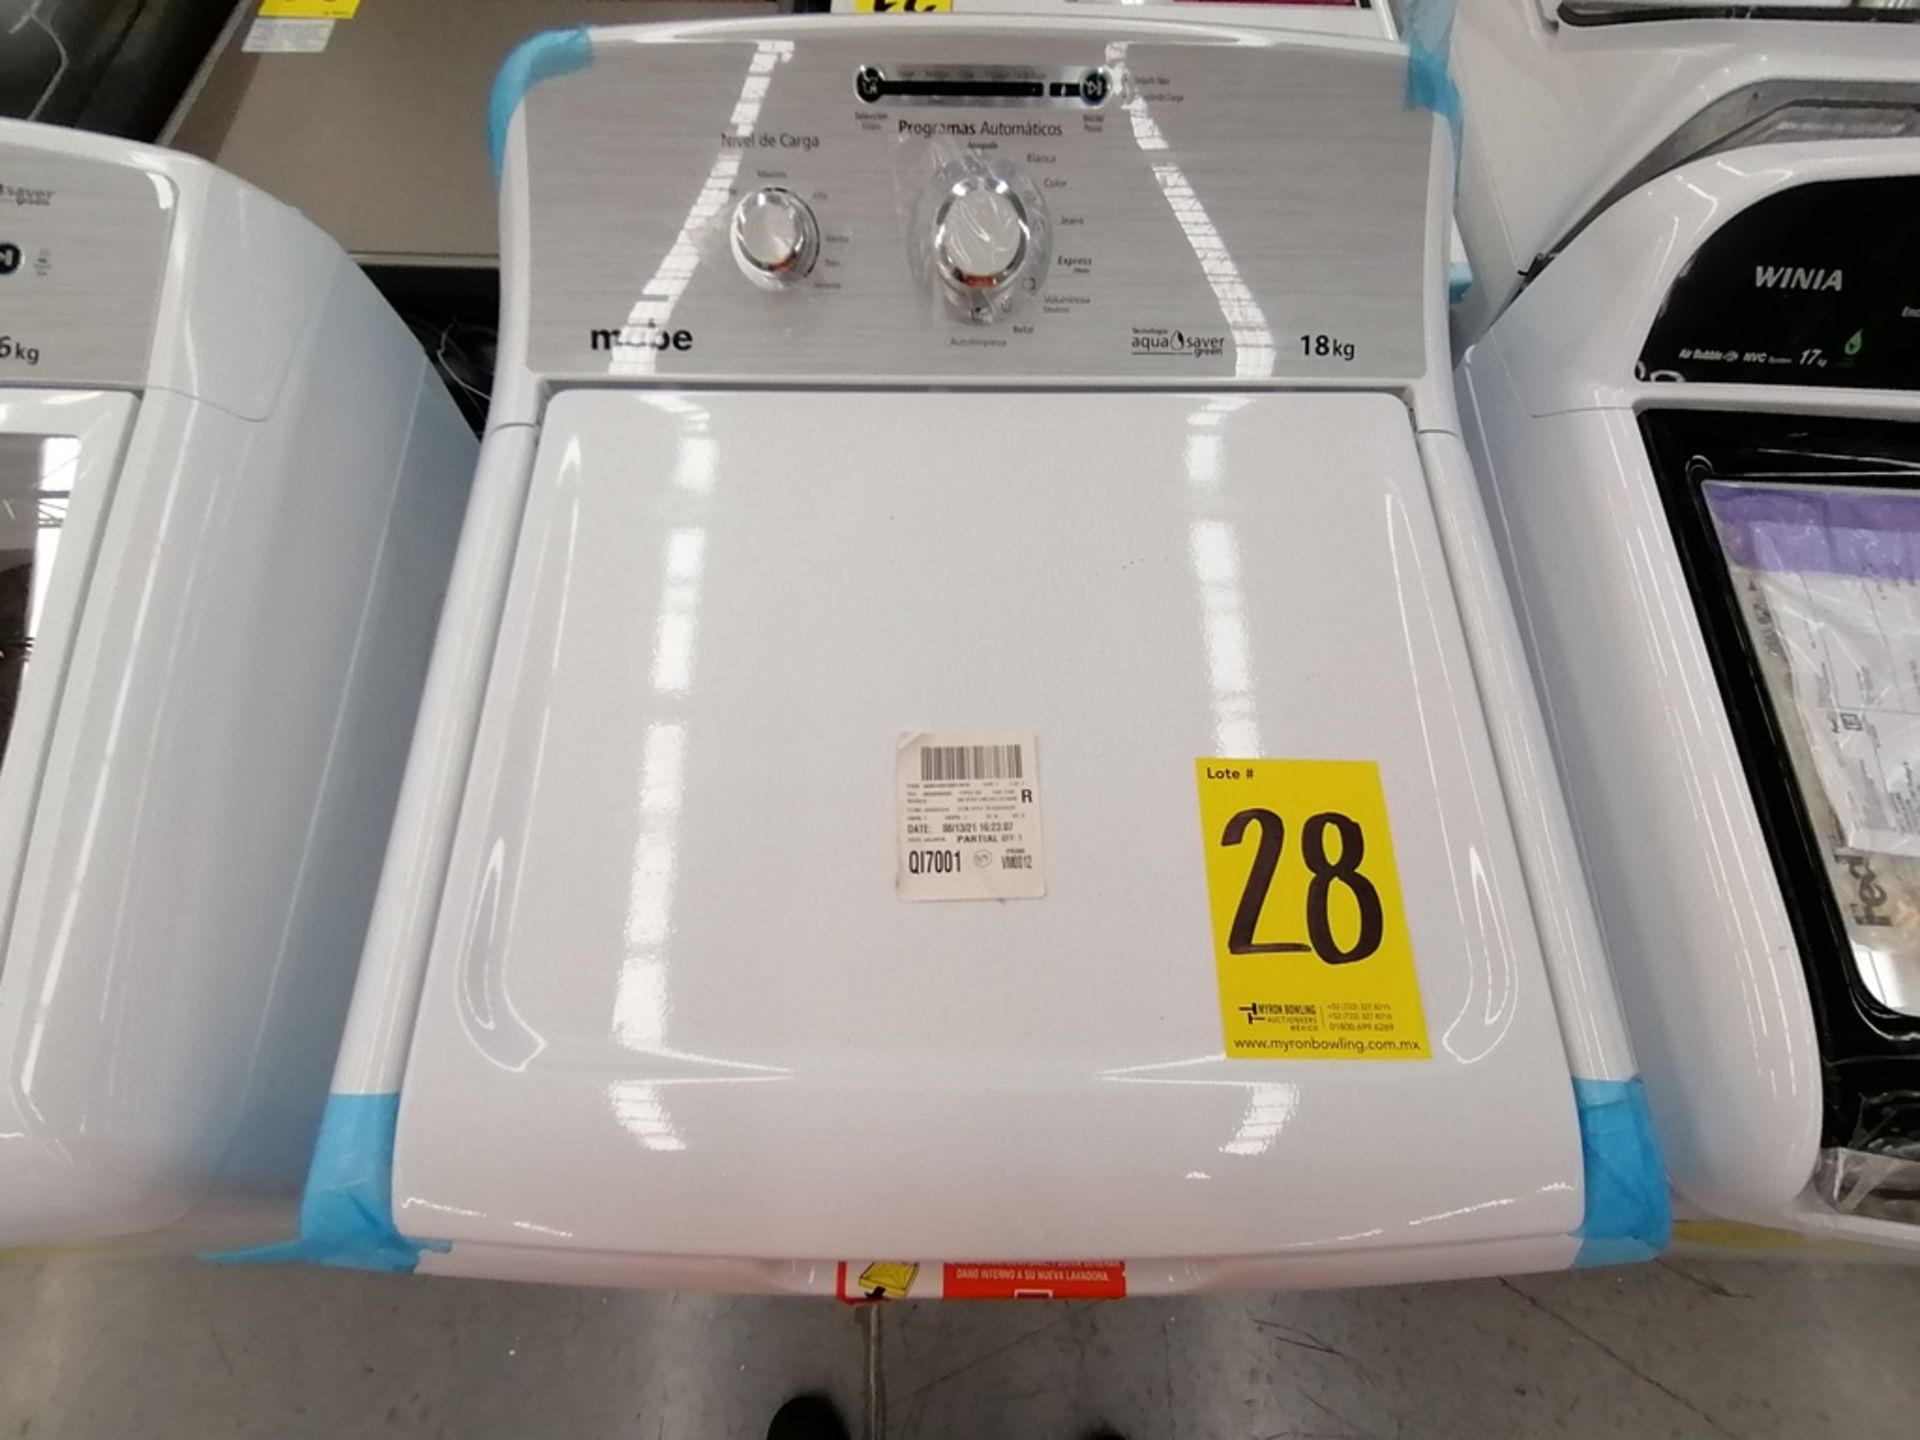 Lote de 3 lavadoras contiene: 1 Lavadora de 16KG, Marca Mabe, Modelo LMA46102VBAB02, Serie 2108S802 - Image 9 of 29